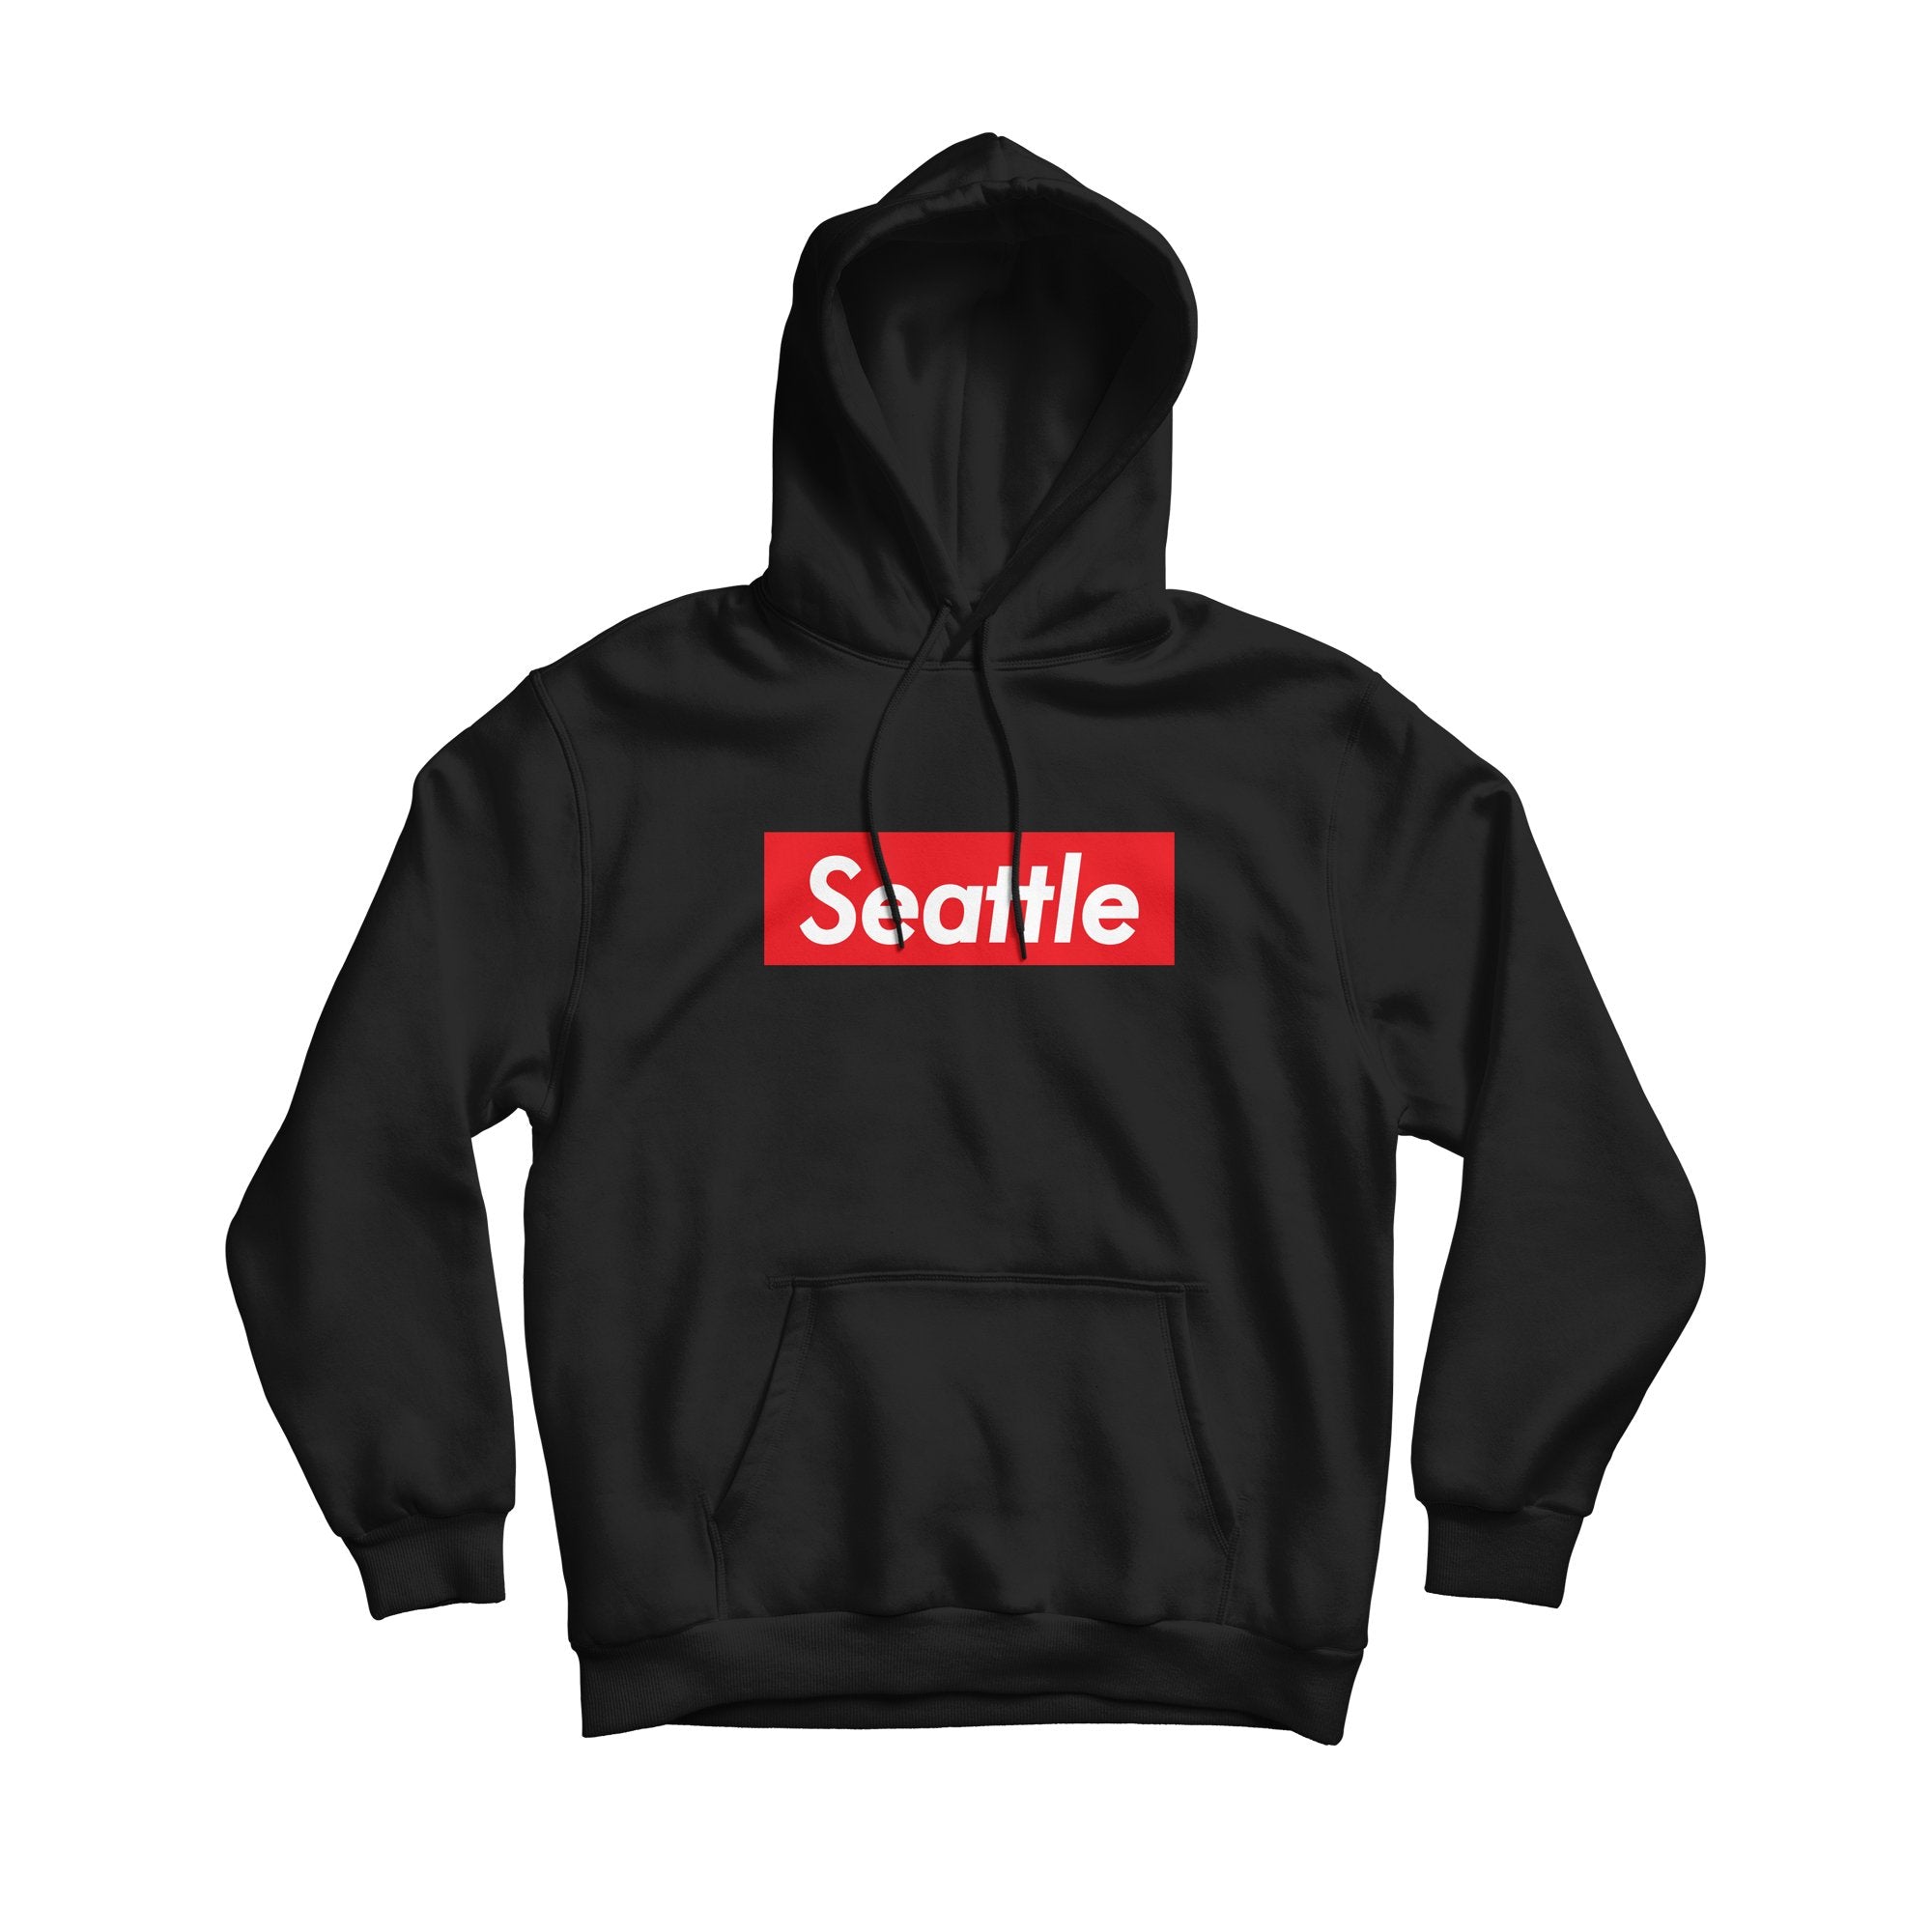 https://www.simplyseattle.com/cdn/shop/products/20-hoodie-seattle-supreme-black-hoodie-1.jpg?v=1607733606